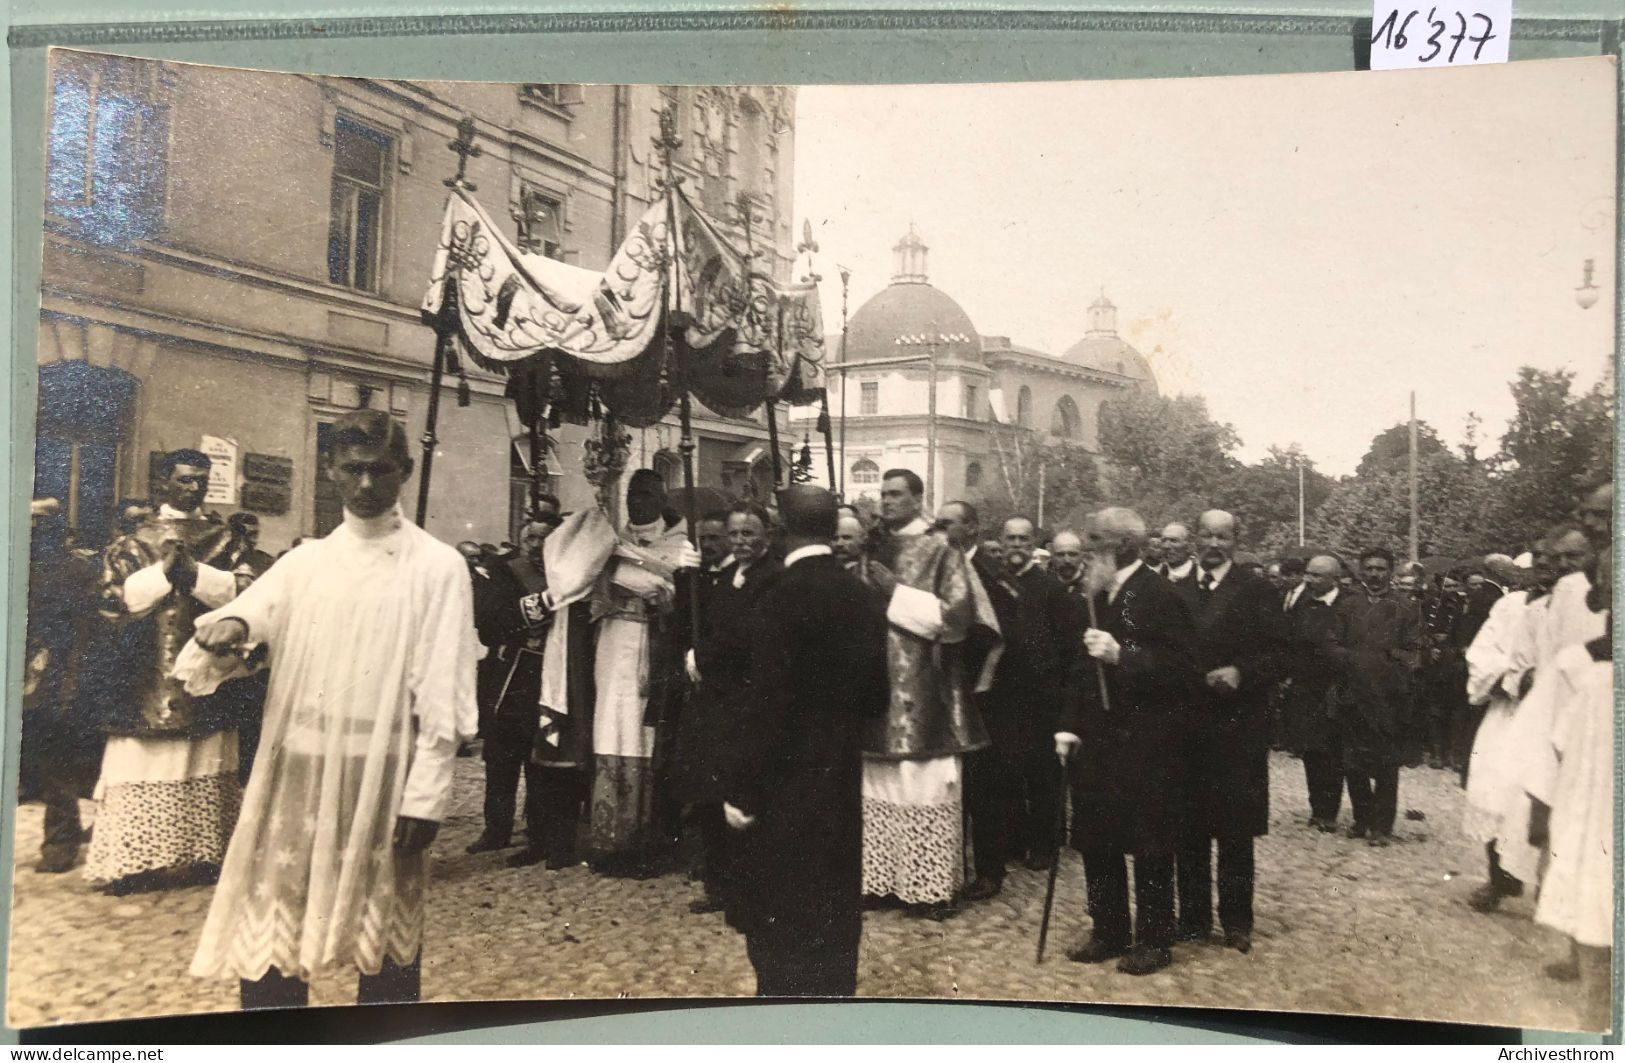 Wilno : 1917 Procession Autour De La Cathédrale De Vilnius (16'377) - Lituania